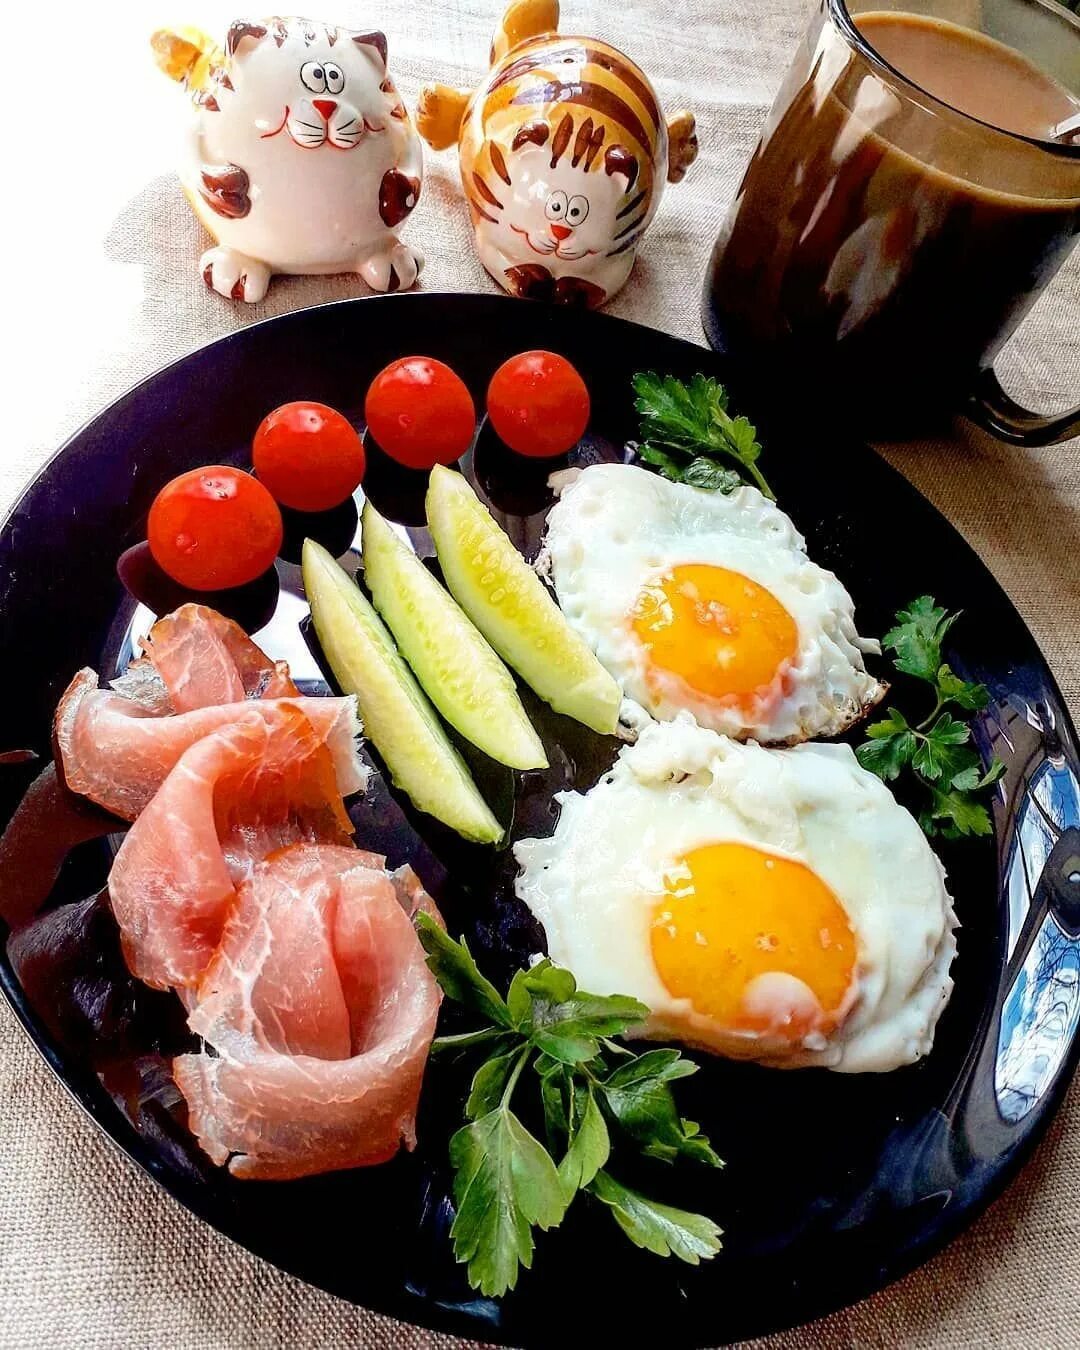 Красивый завтрак. Завтрак для любимого. Красивый завтрак для любимого. Вкусный и красивый завтрак. Обожает яйца